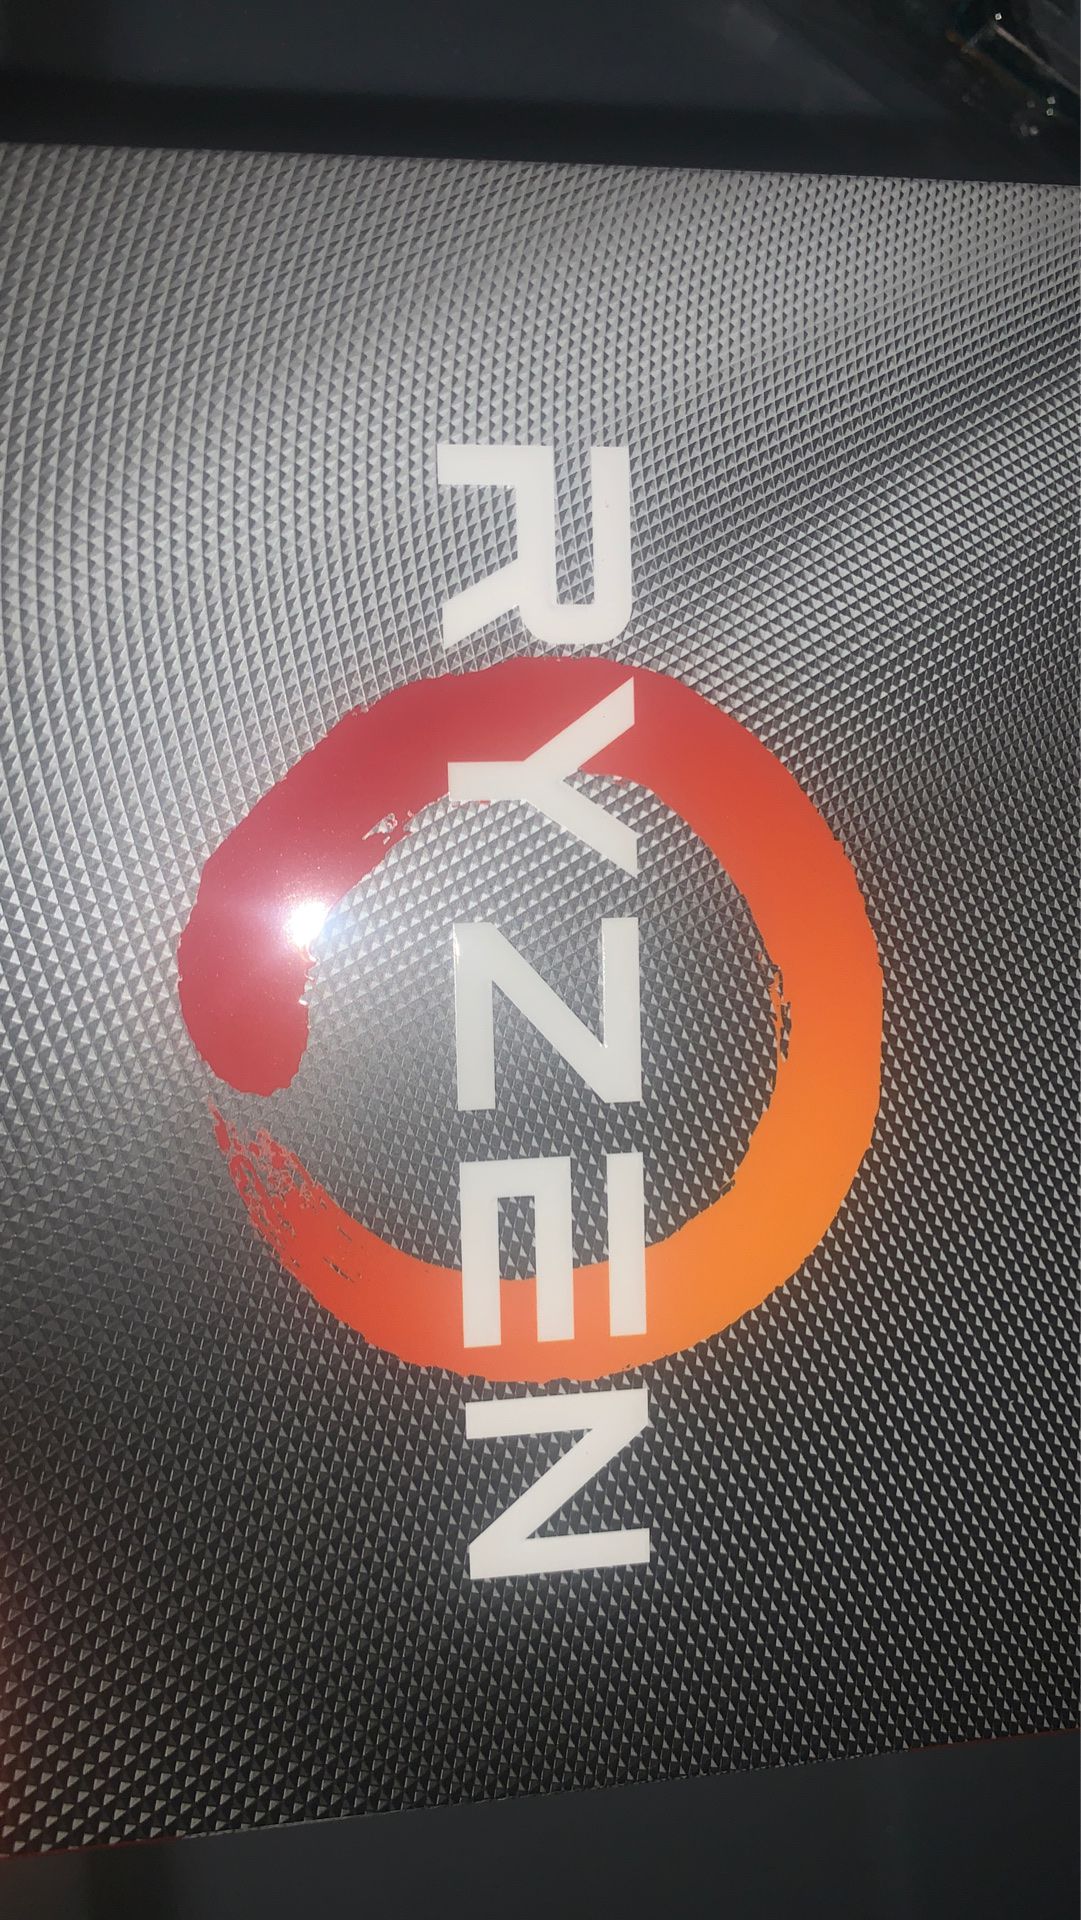 Ryzen 2600x processor